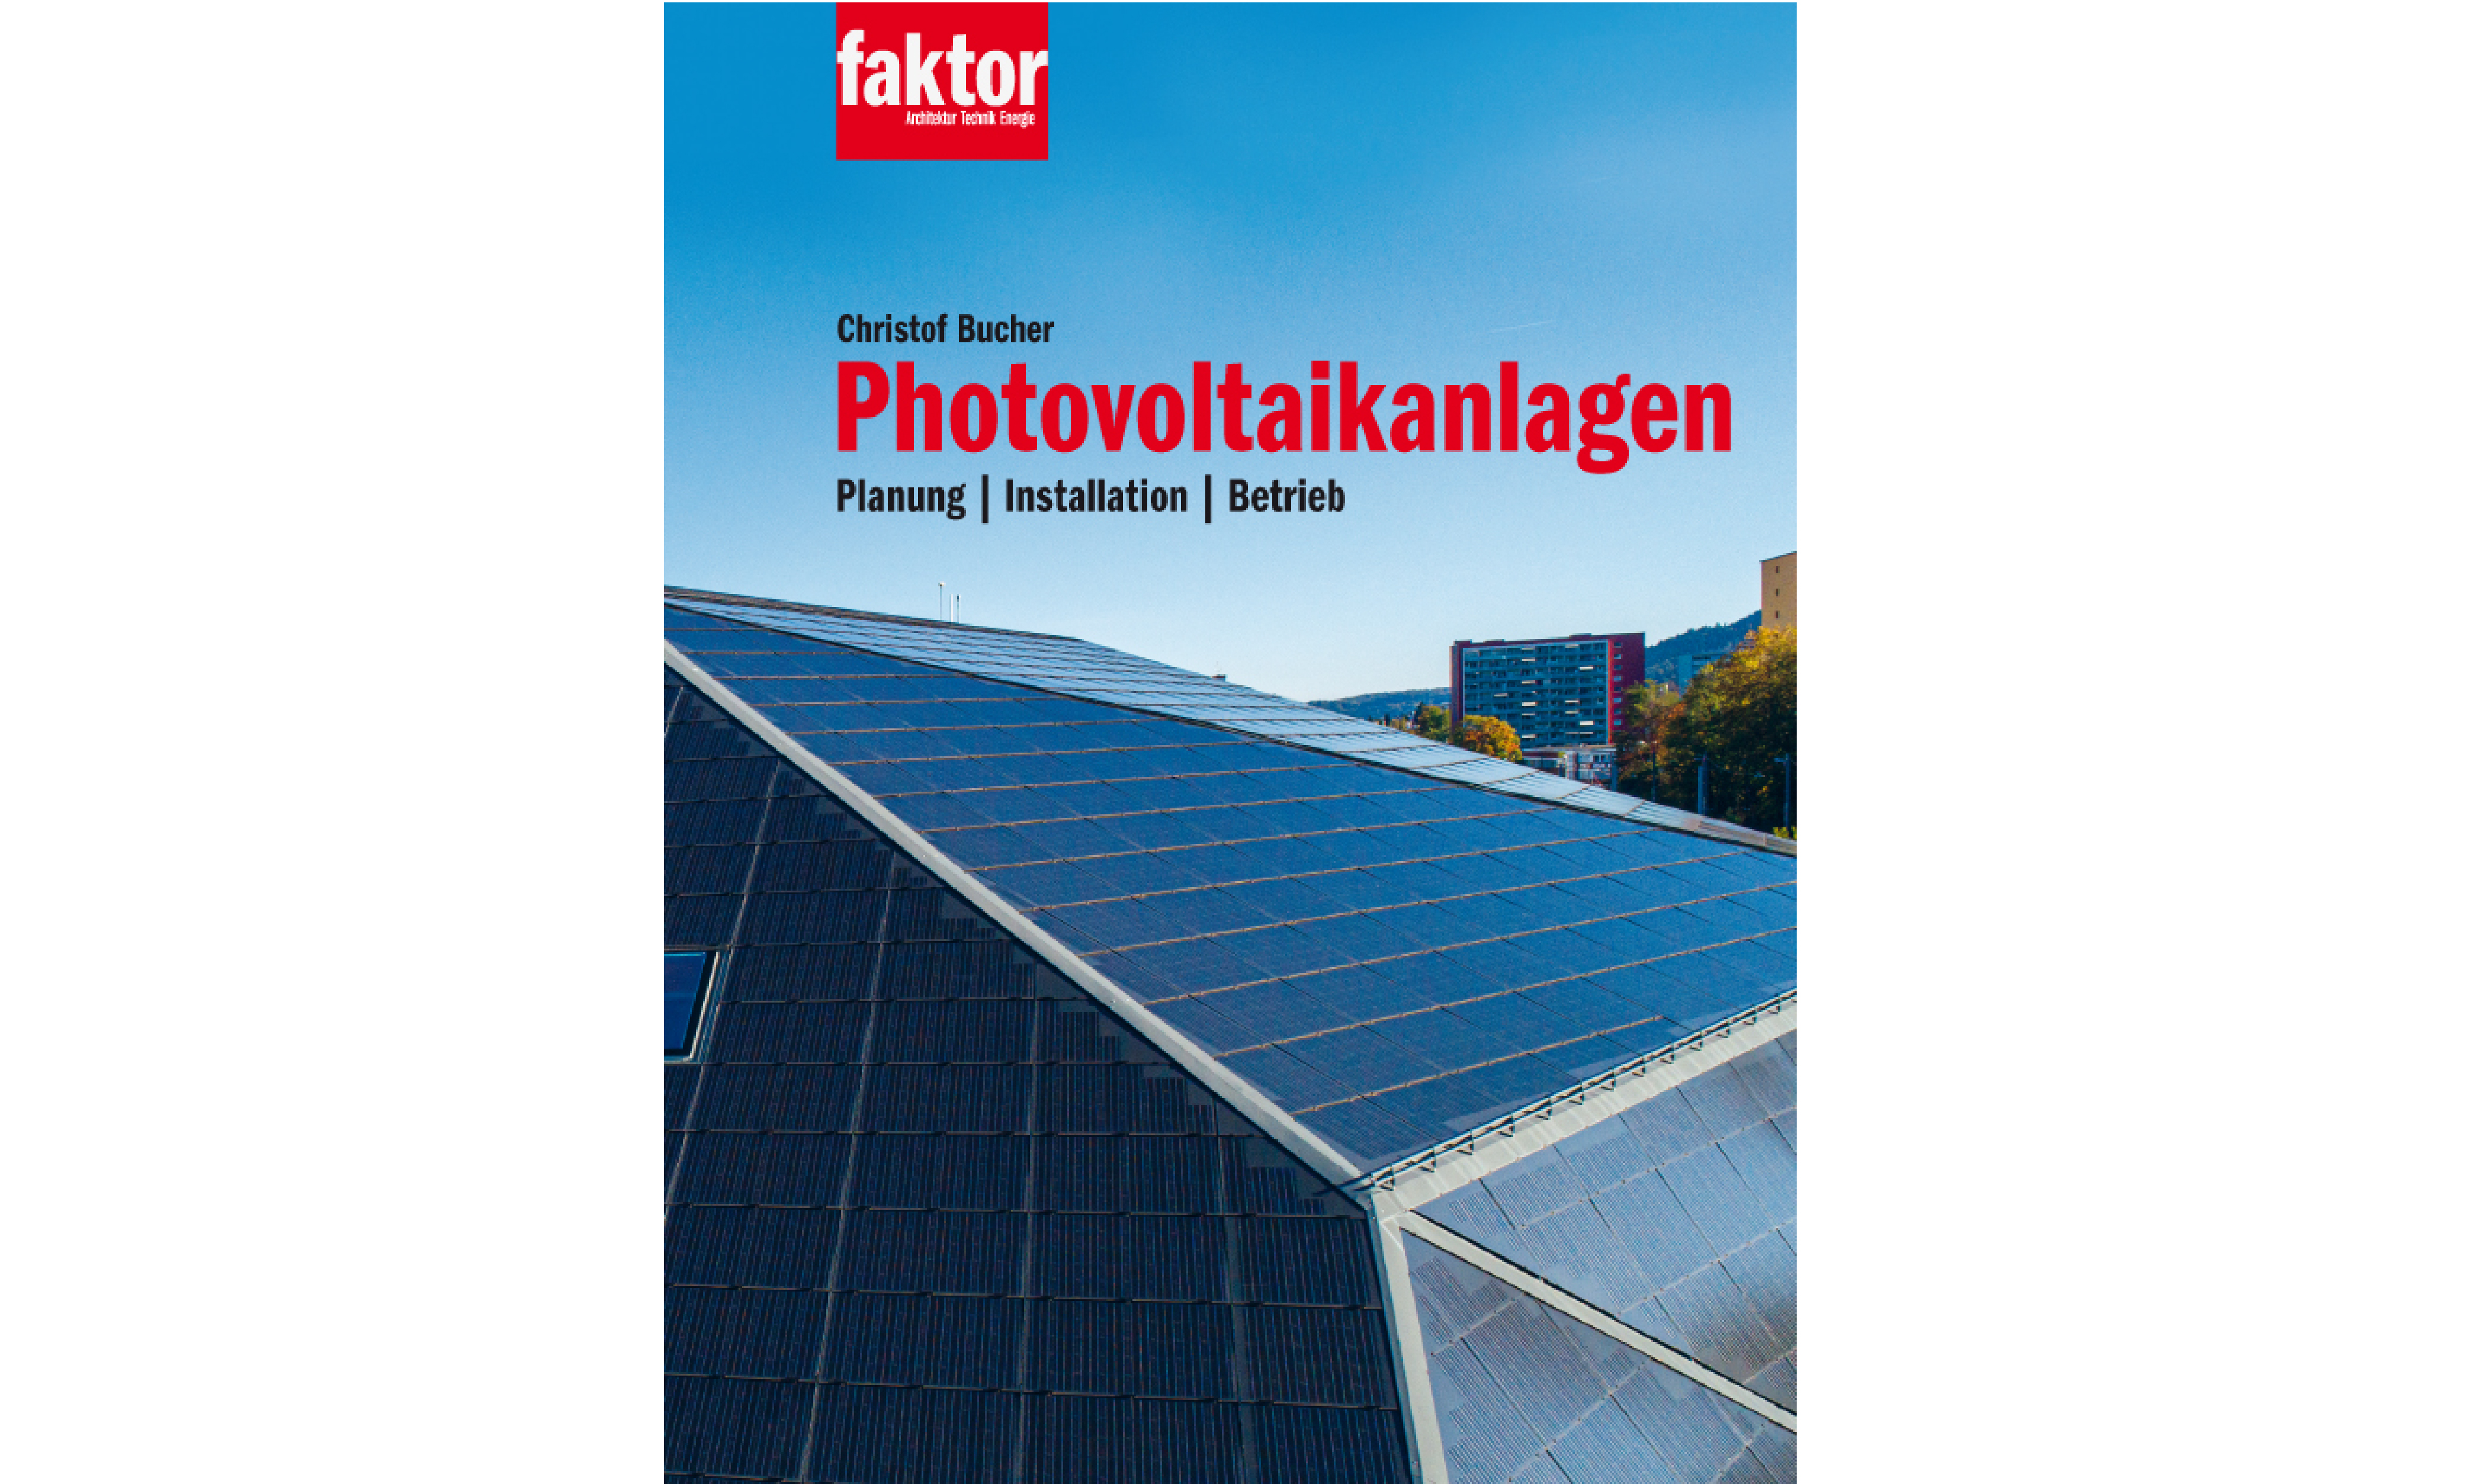 «Photovoltaikanlagen» von Christof Bucher